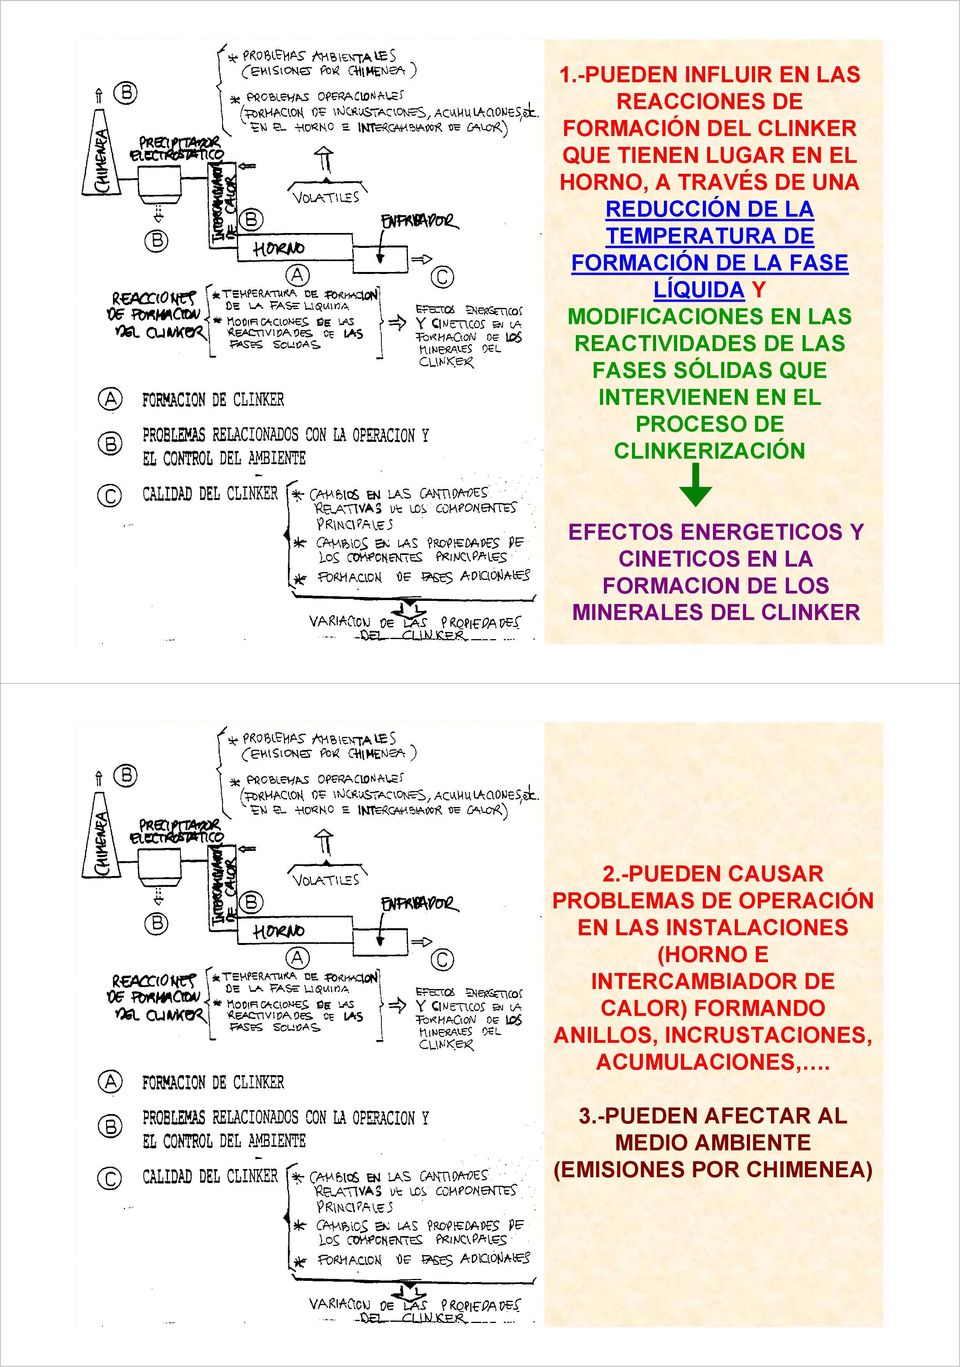 EFECTOS ENERGETICOS Y CINETICOS EN LA FORMACION DE LOS MINERALES DEL CLINKER 2.